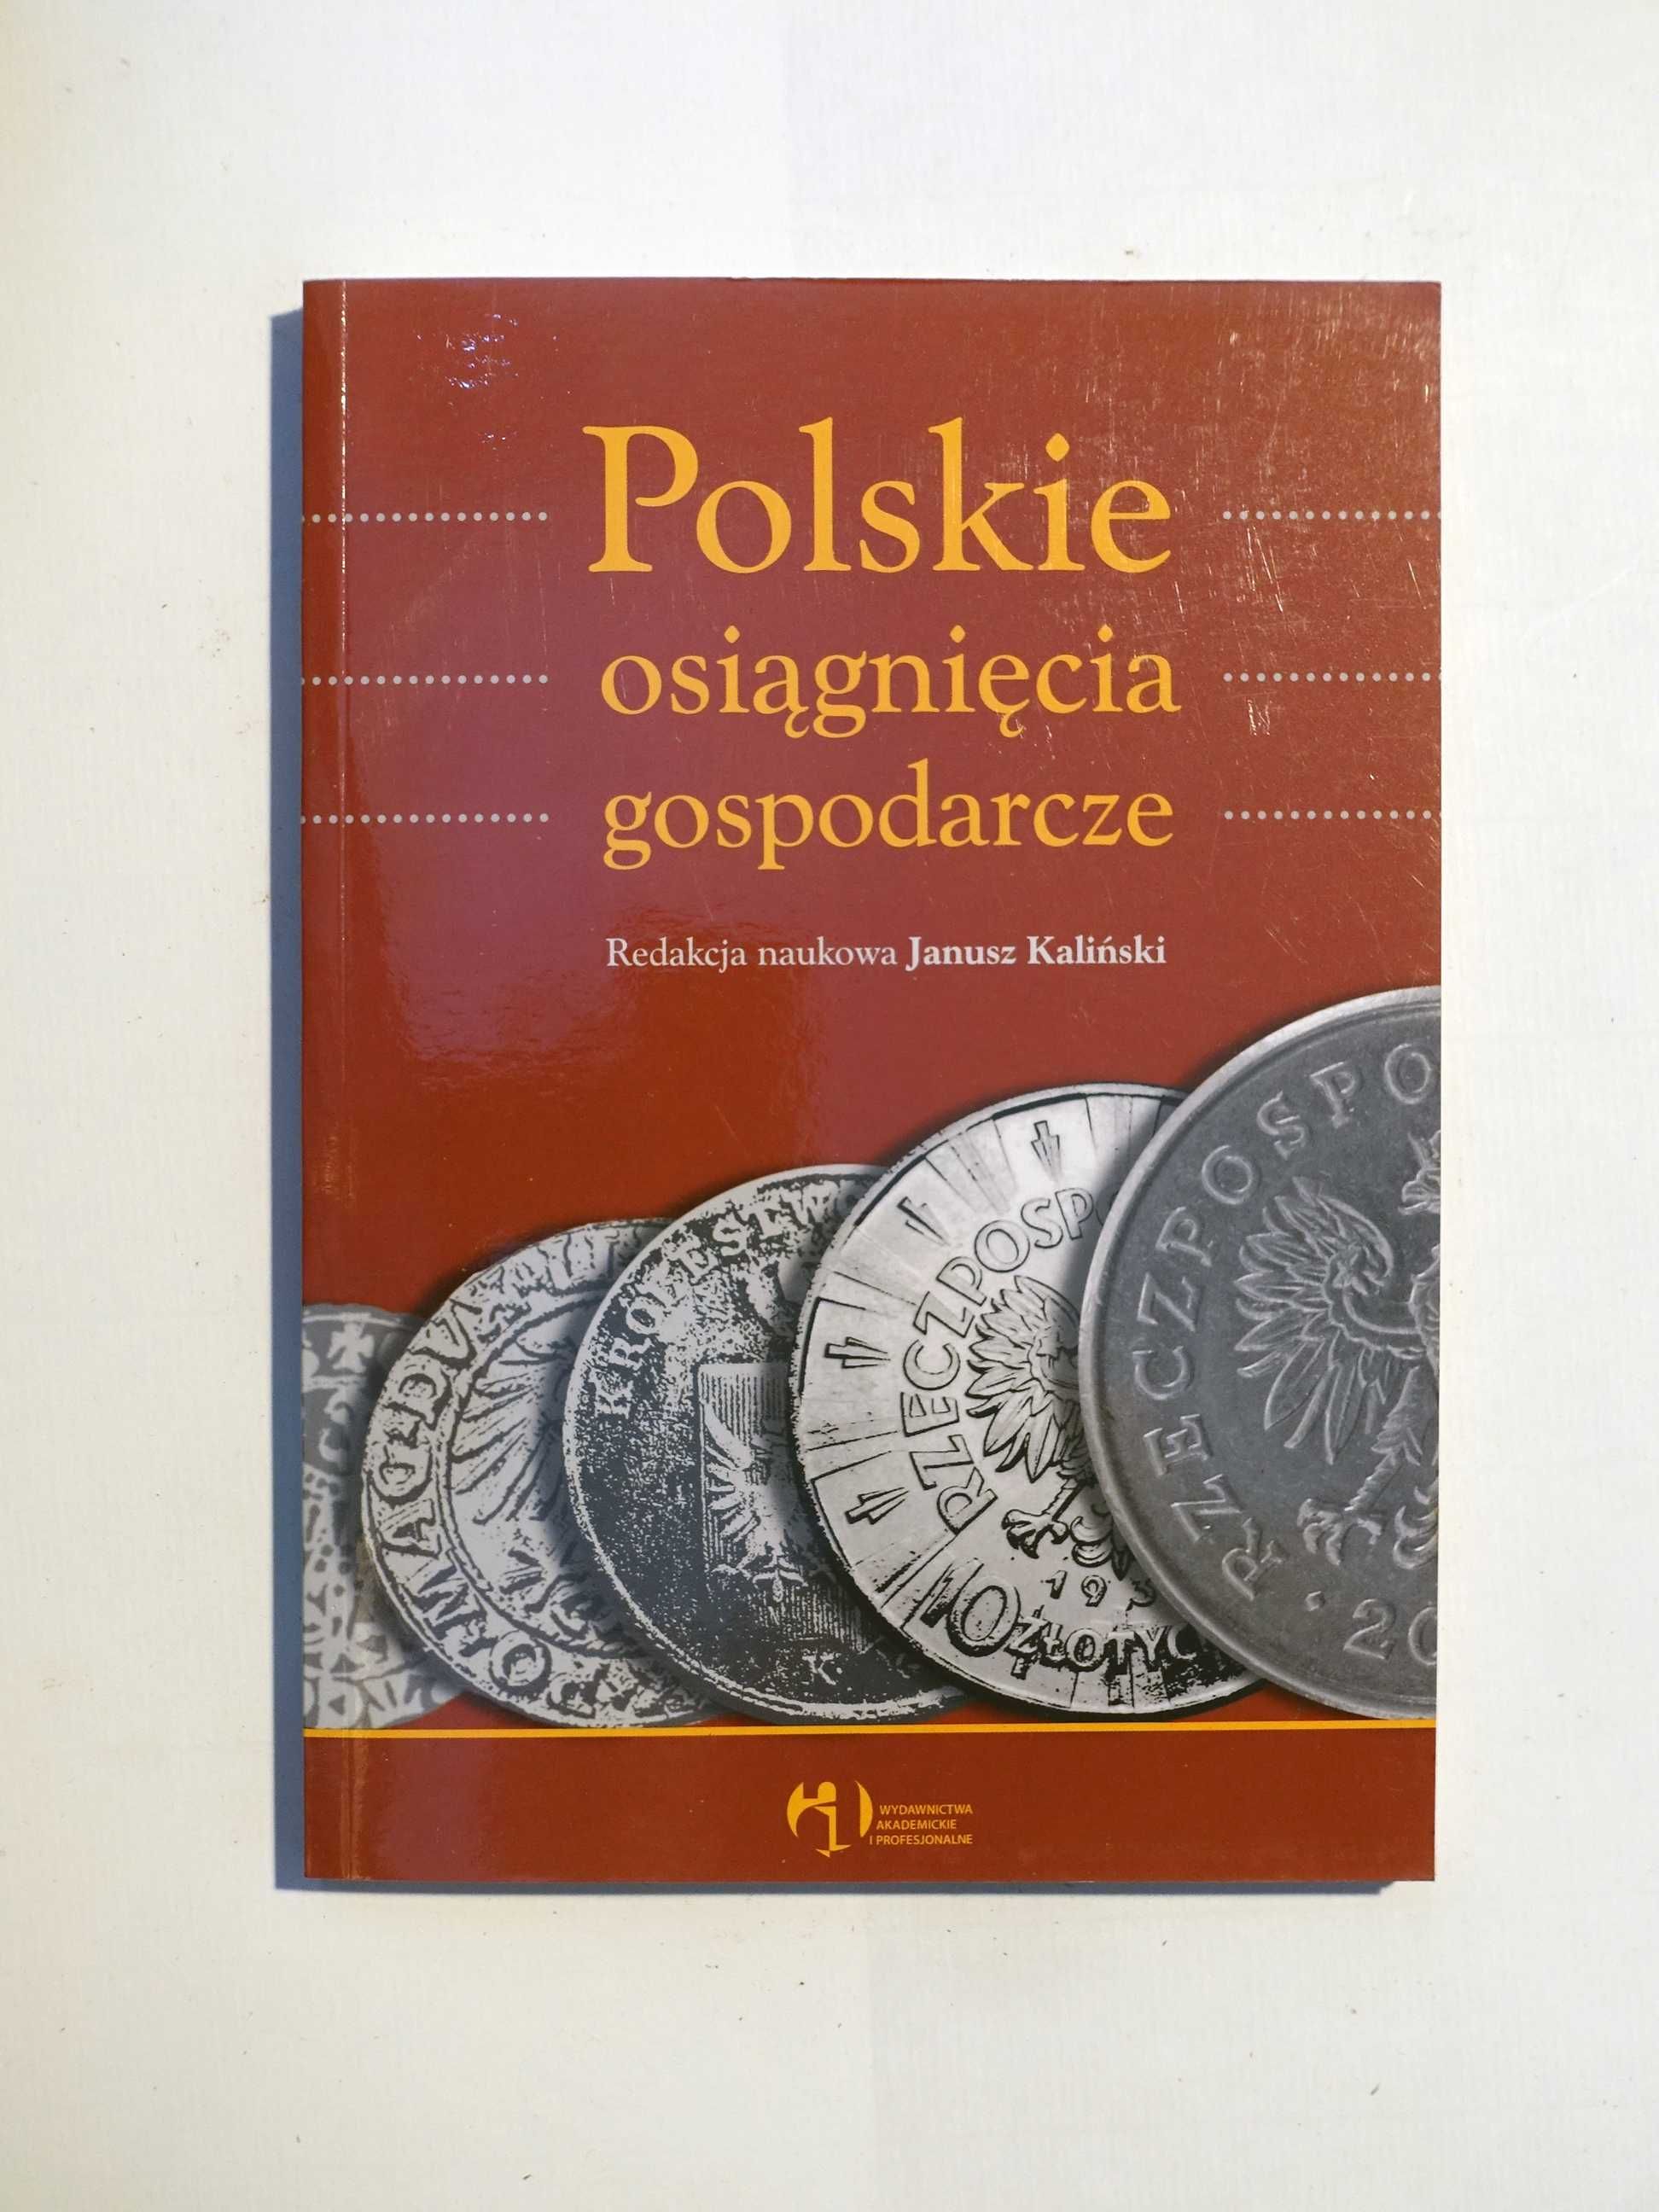 Janusz Kaliński "Polskie osiągnięcia gospodarcze"